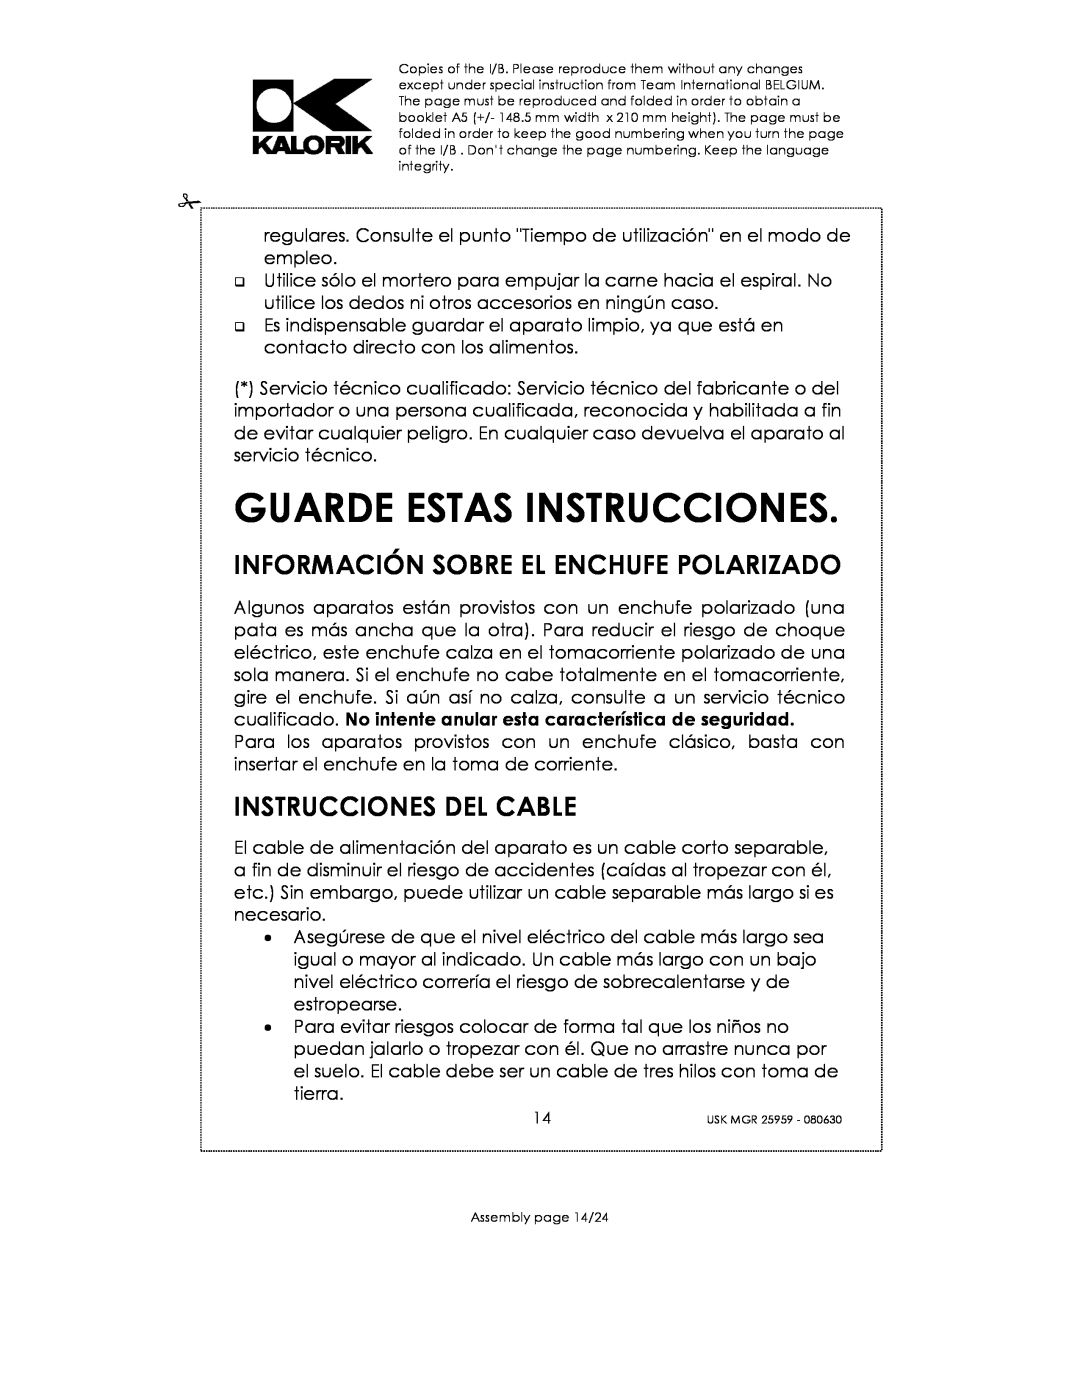 Kalorik USK MGR 25959 manual Guarde Estas Instrucciones, Información Sobre El Enchufe Polarizado, Instrucciones Del Cable 